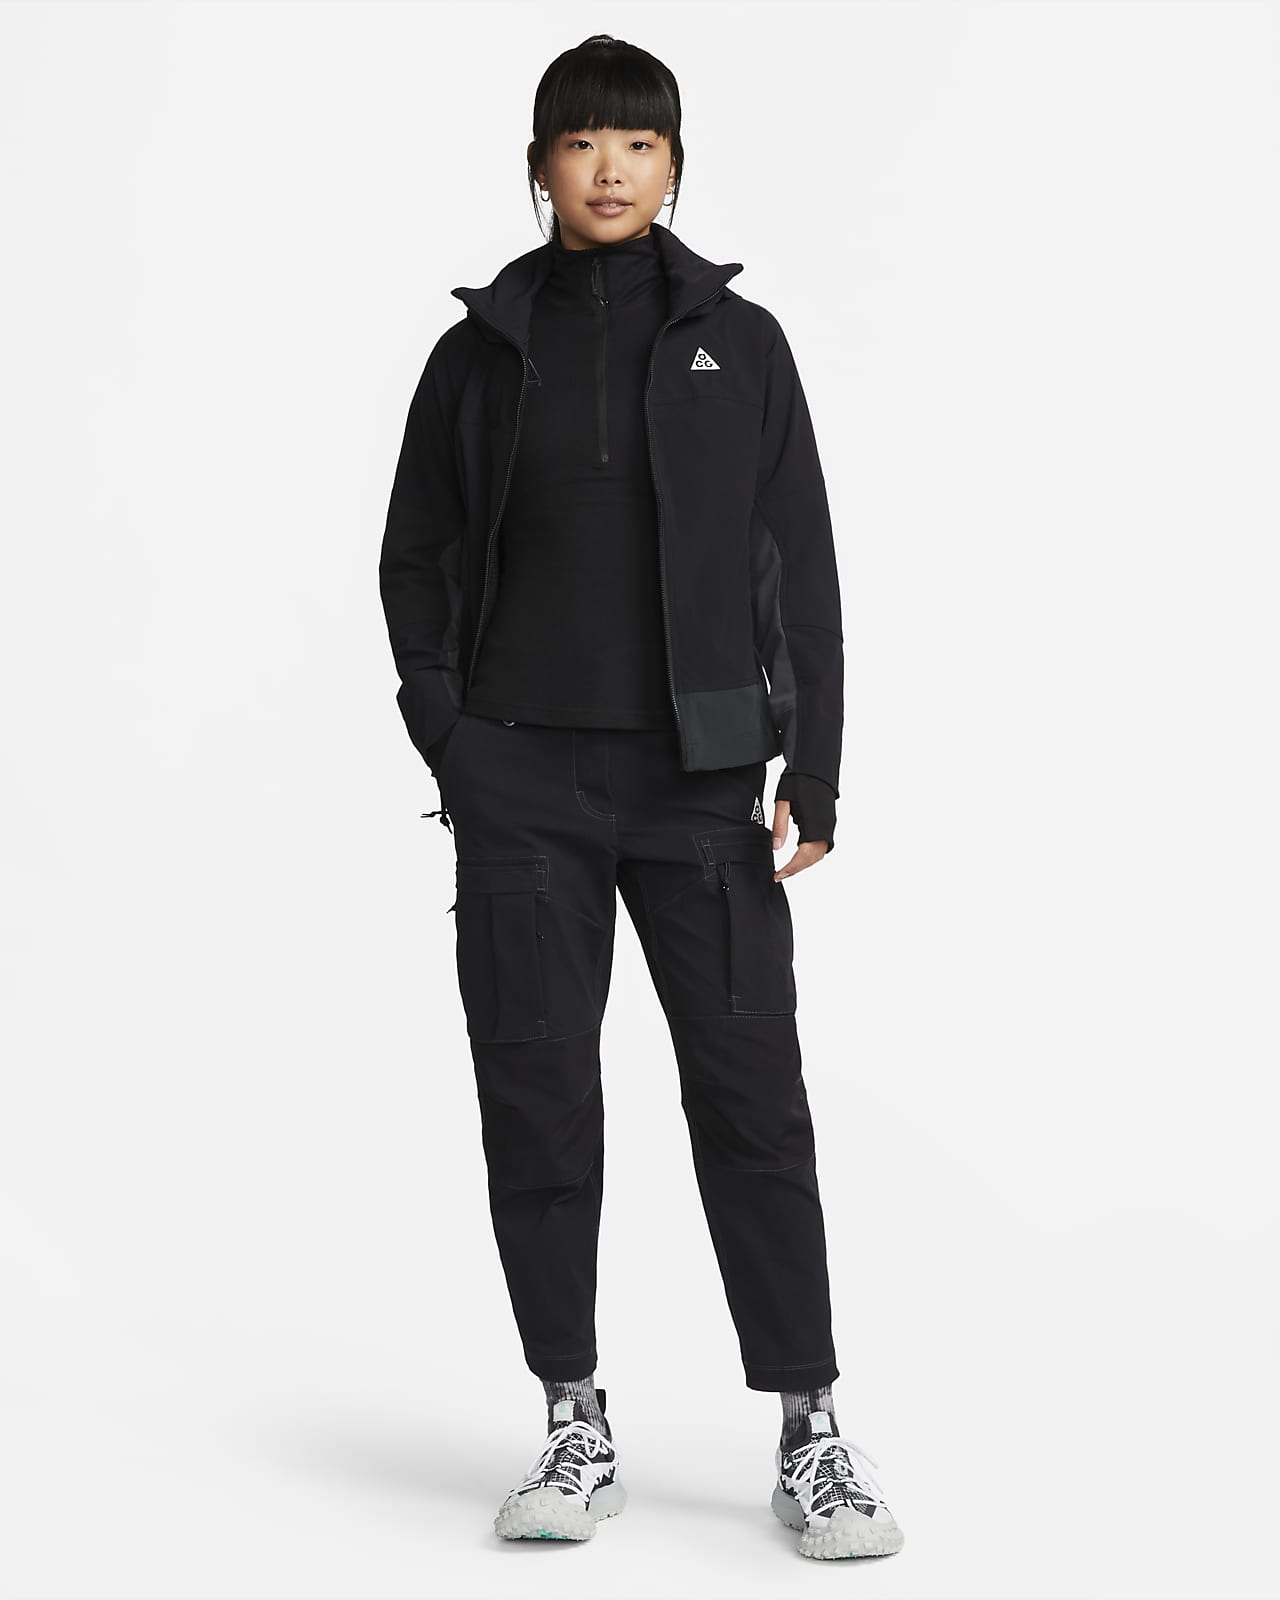 Nike ACG 'Sun Farer' Women's Jacket